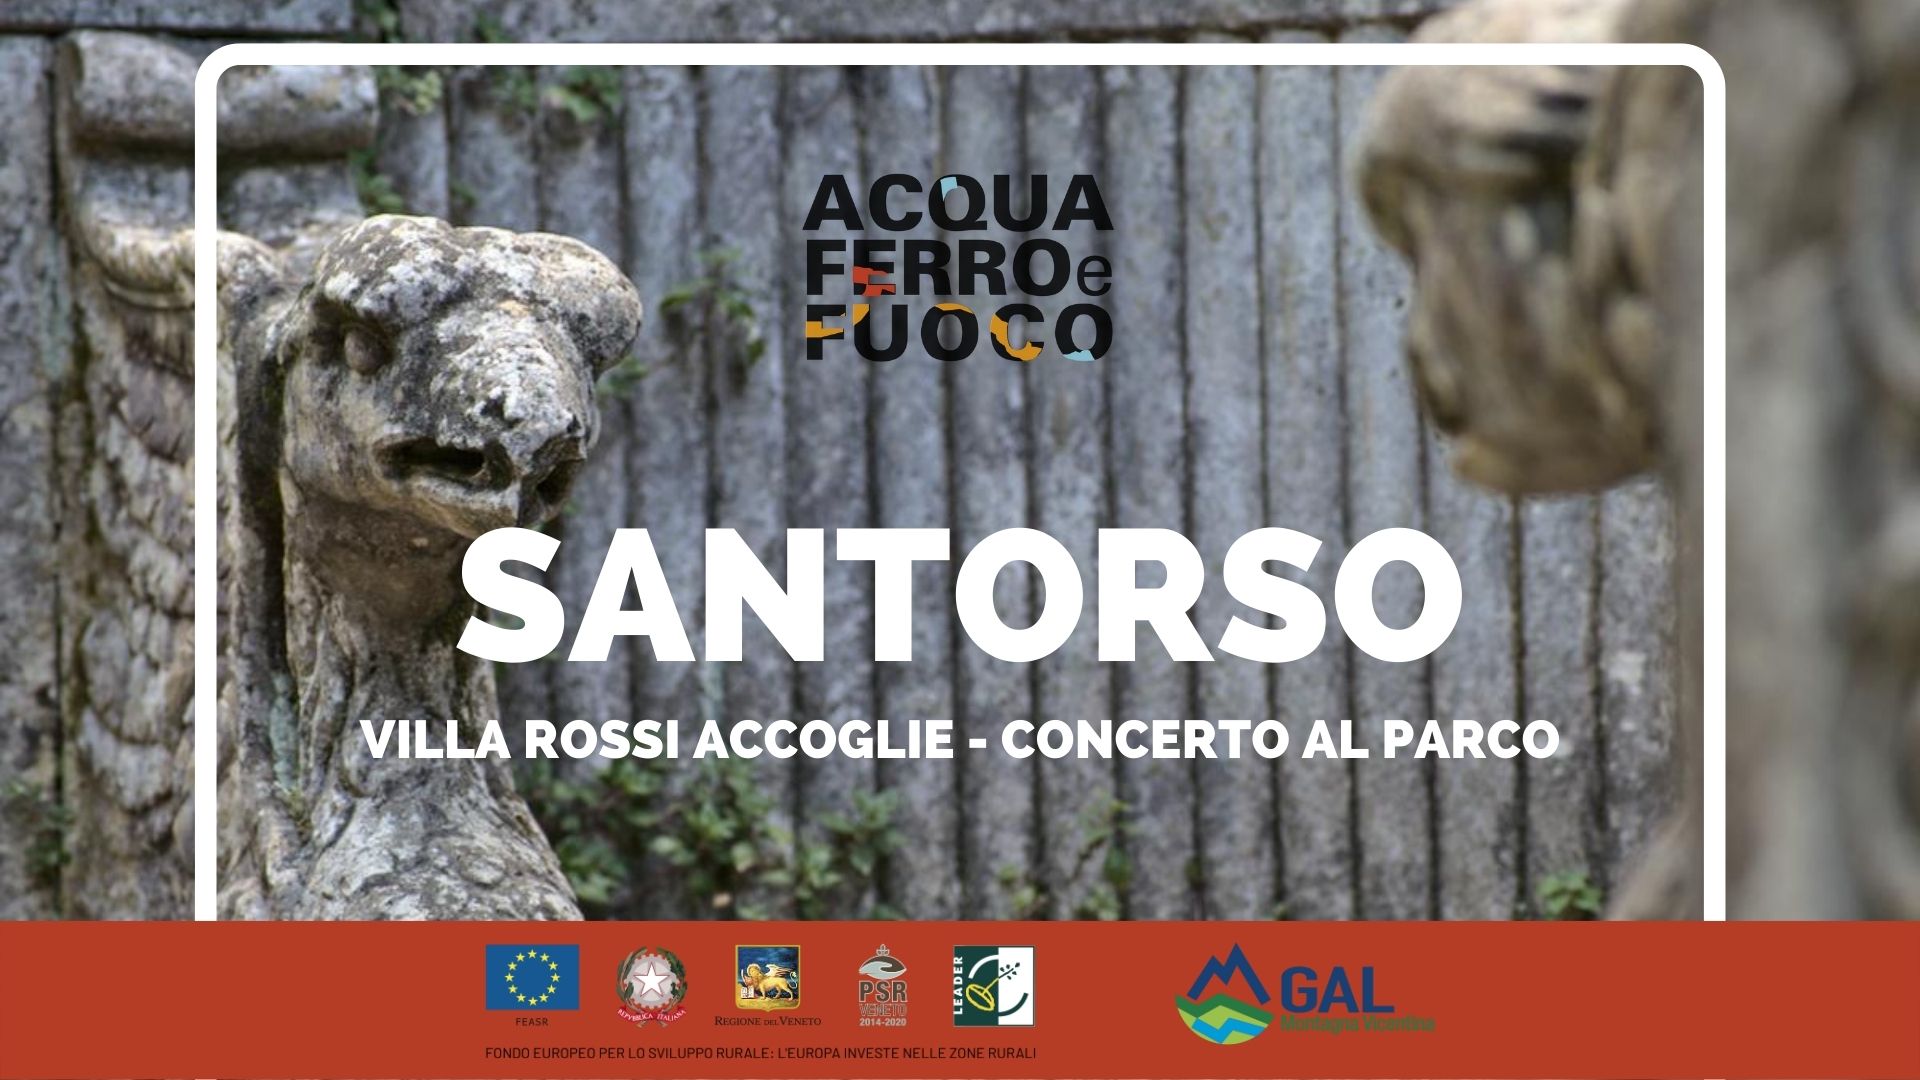 Santorso (VI) - Parco Rossi in musica  (pomeriggio) - Acqua Ferro e Fuoco